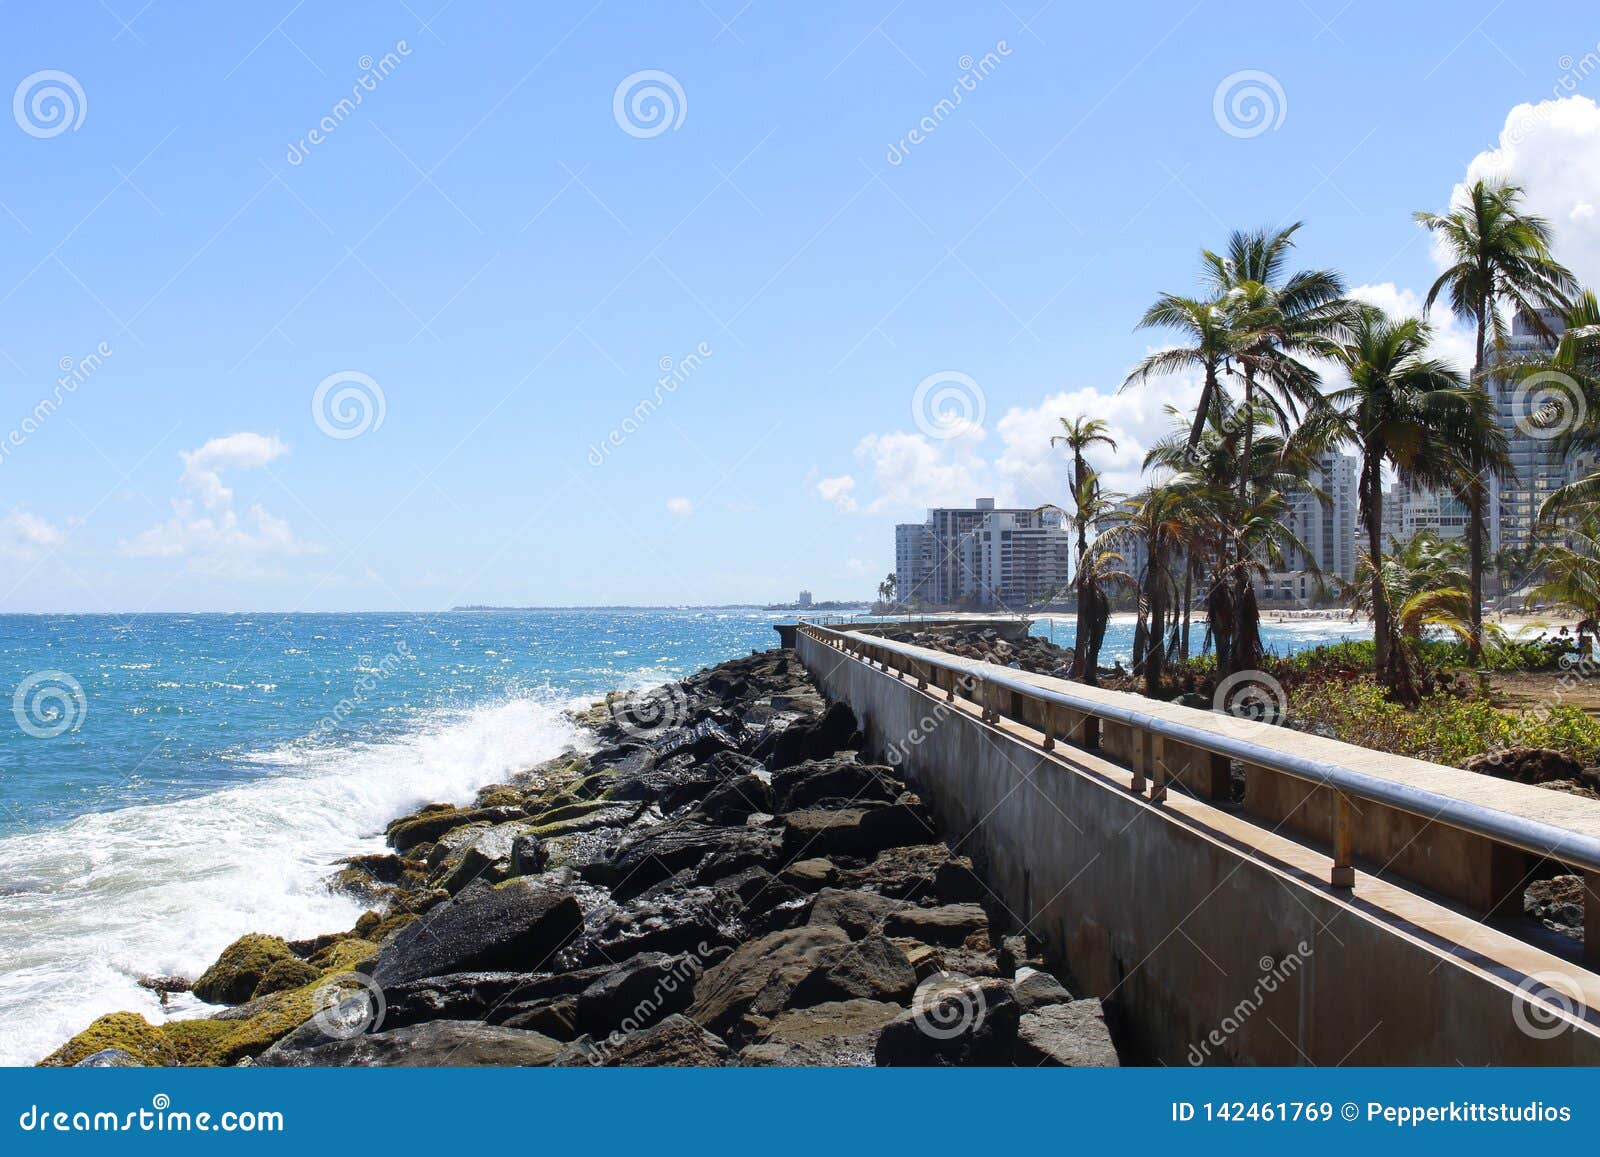 waves and palms - la ventana al mar park - condado, san juan, puerto rico